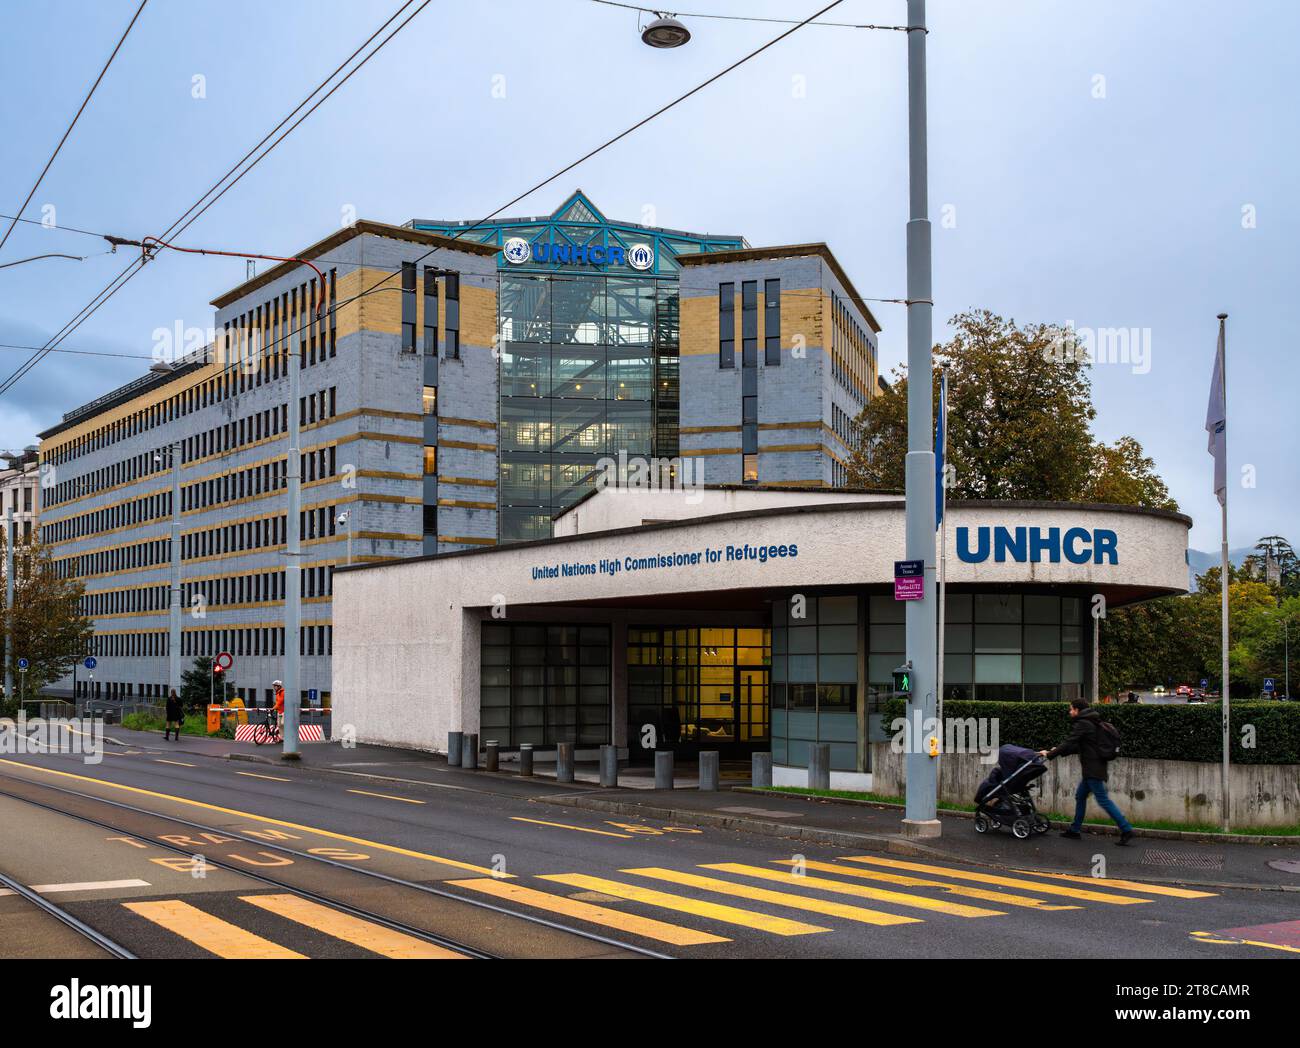 Genf, Schweiz - 3. November 2023: Hoher Flüchtlingskommissar der Vereinten Nationen - Sitz der Organisation Stockfoto